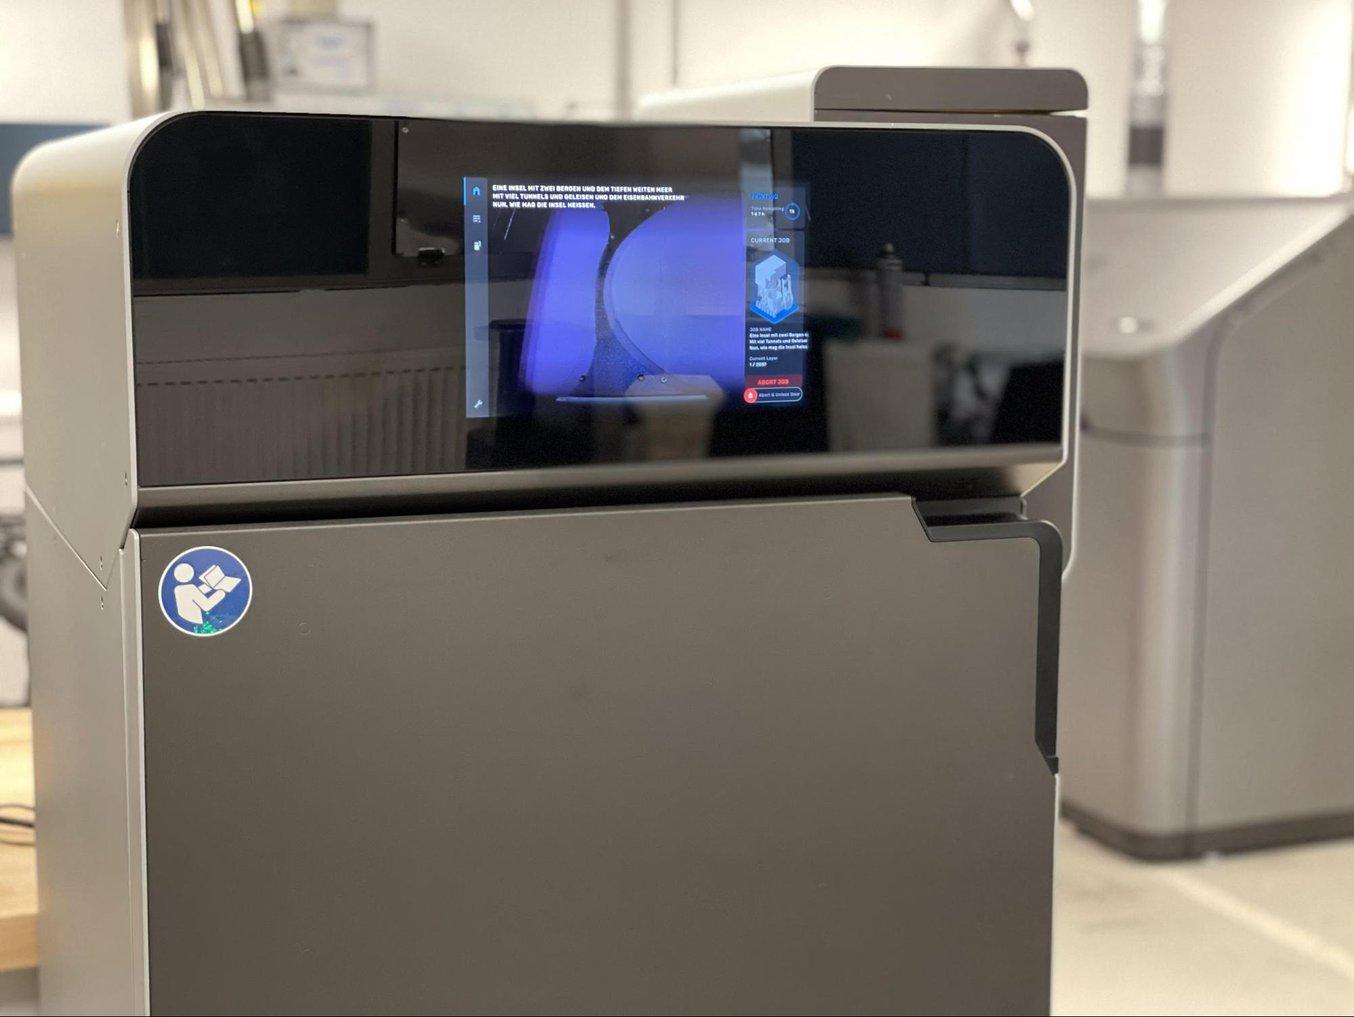 Il centro di produzione additiva di Brose comprende quasi tutti i processi di stampa 3D presenti sul mercato, tra cui la nuova arrivata, la Fuse 1.